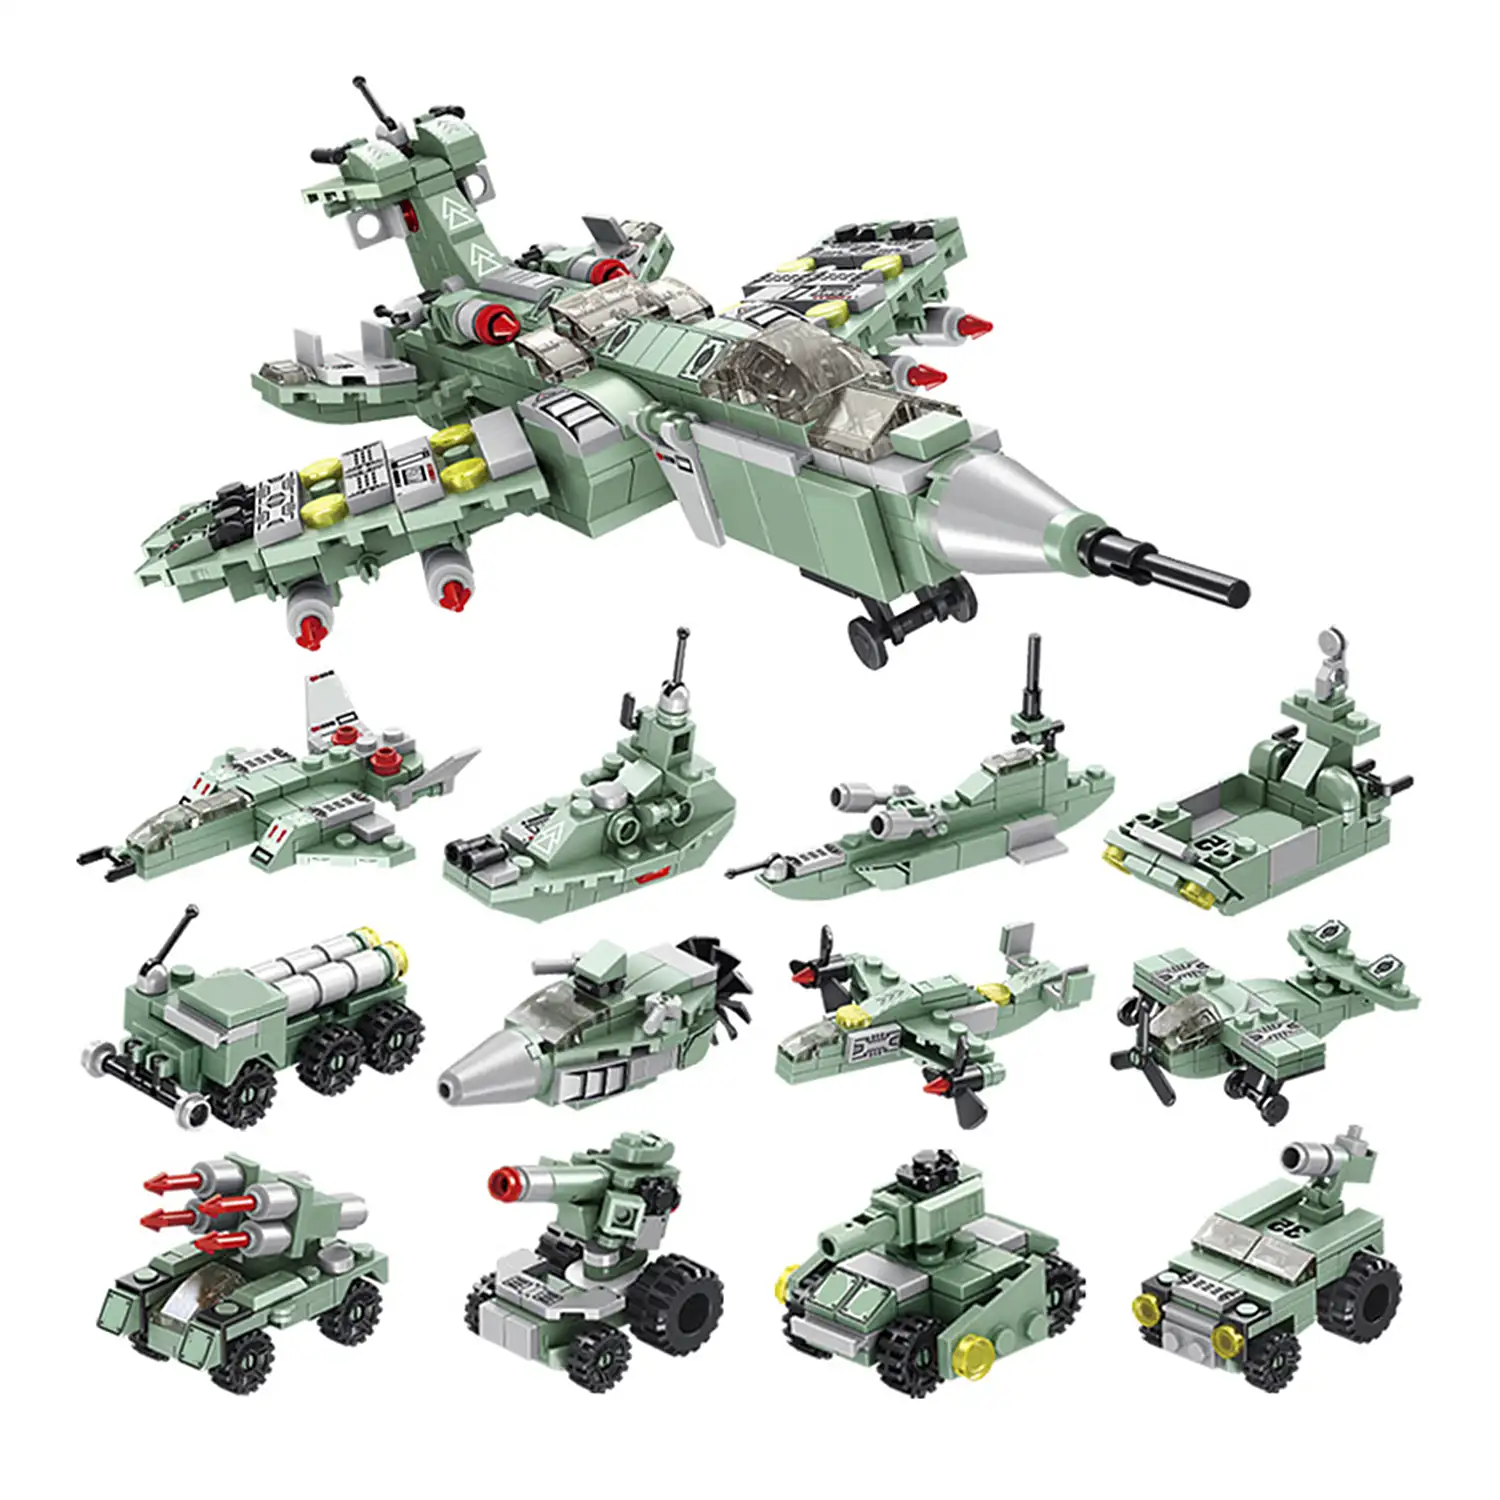 Destroyer Fighter 12 en 1, cada modelo 2 formas, 25 formas, 576 piezas